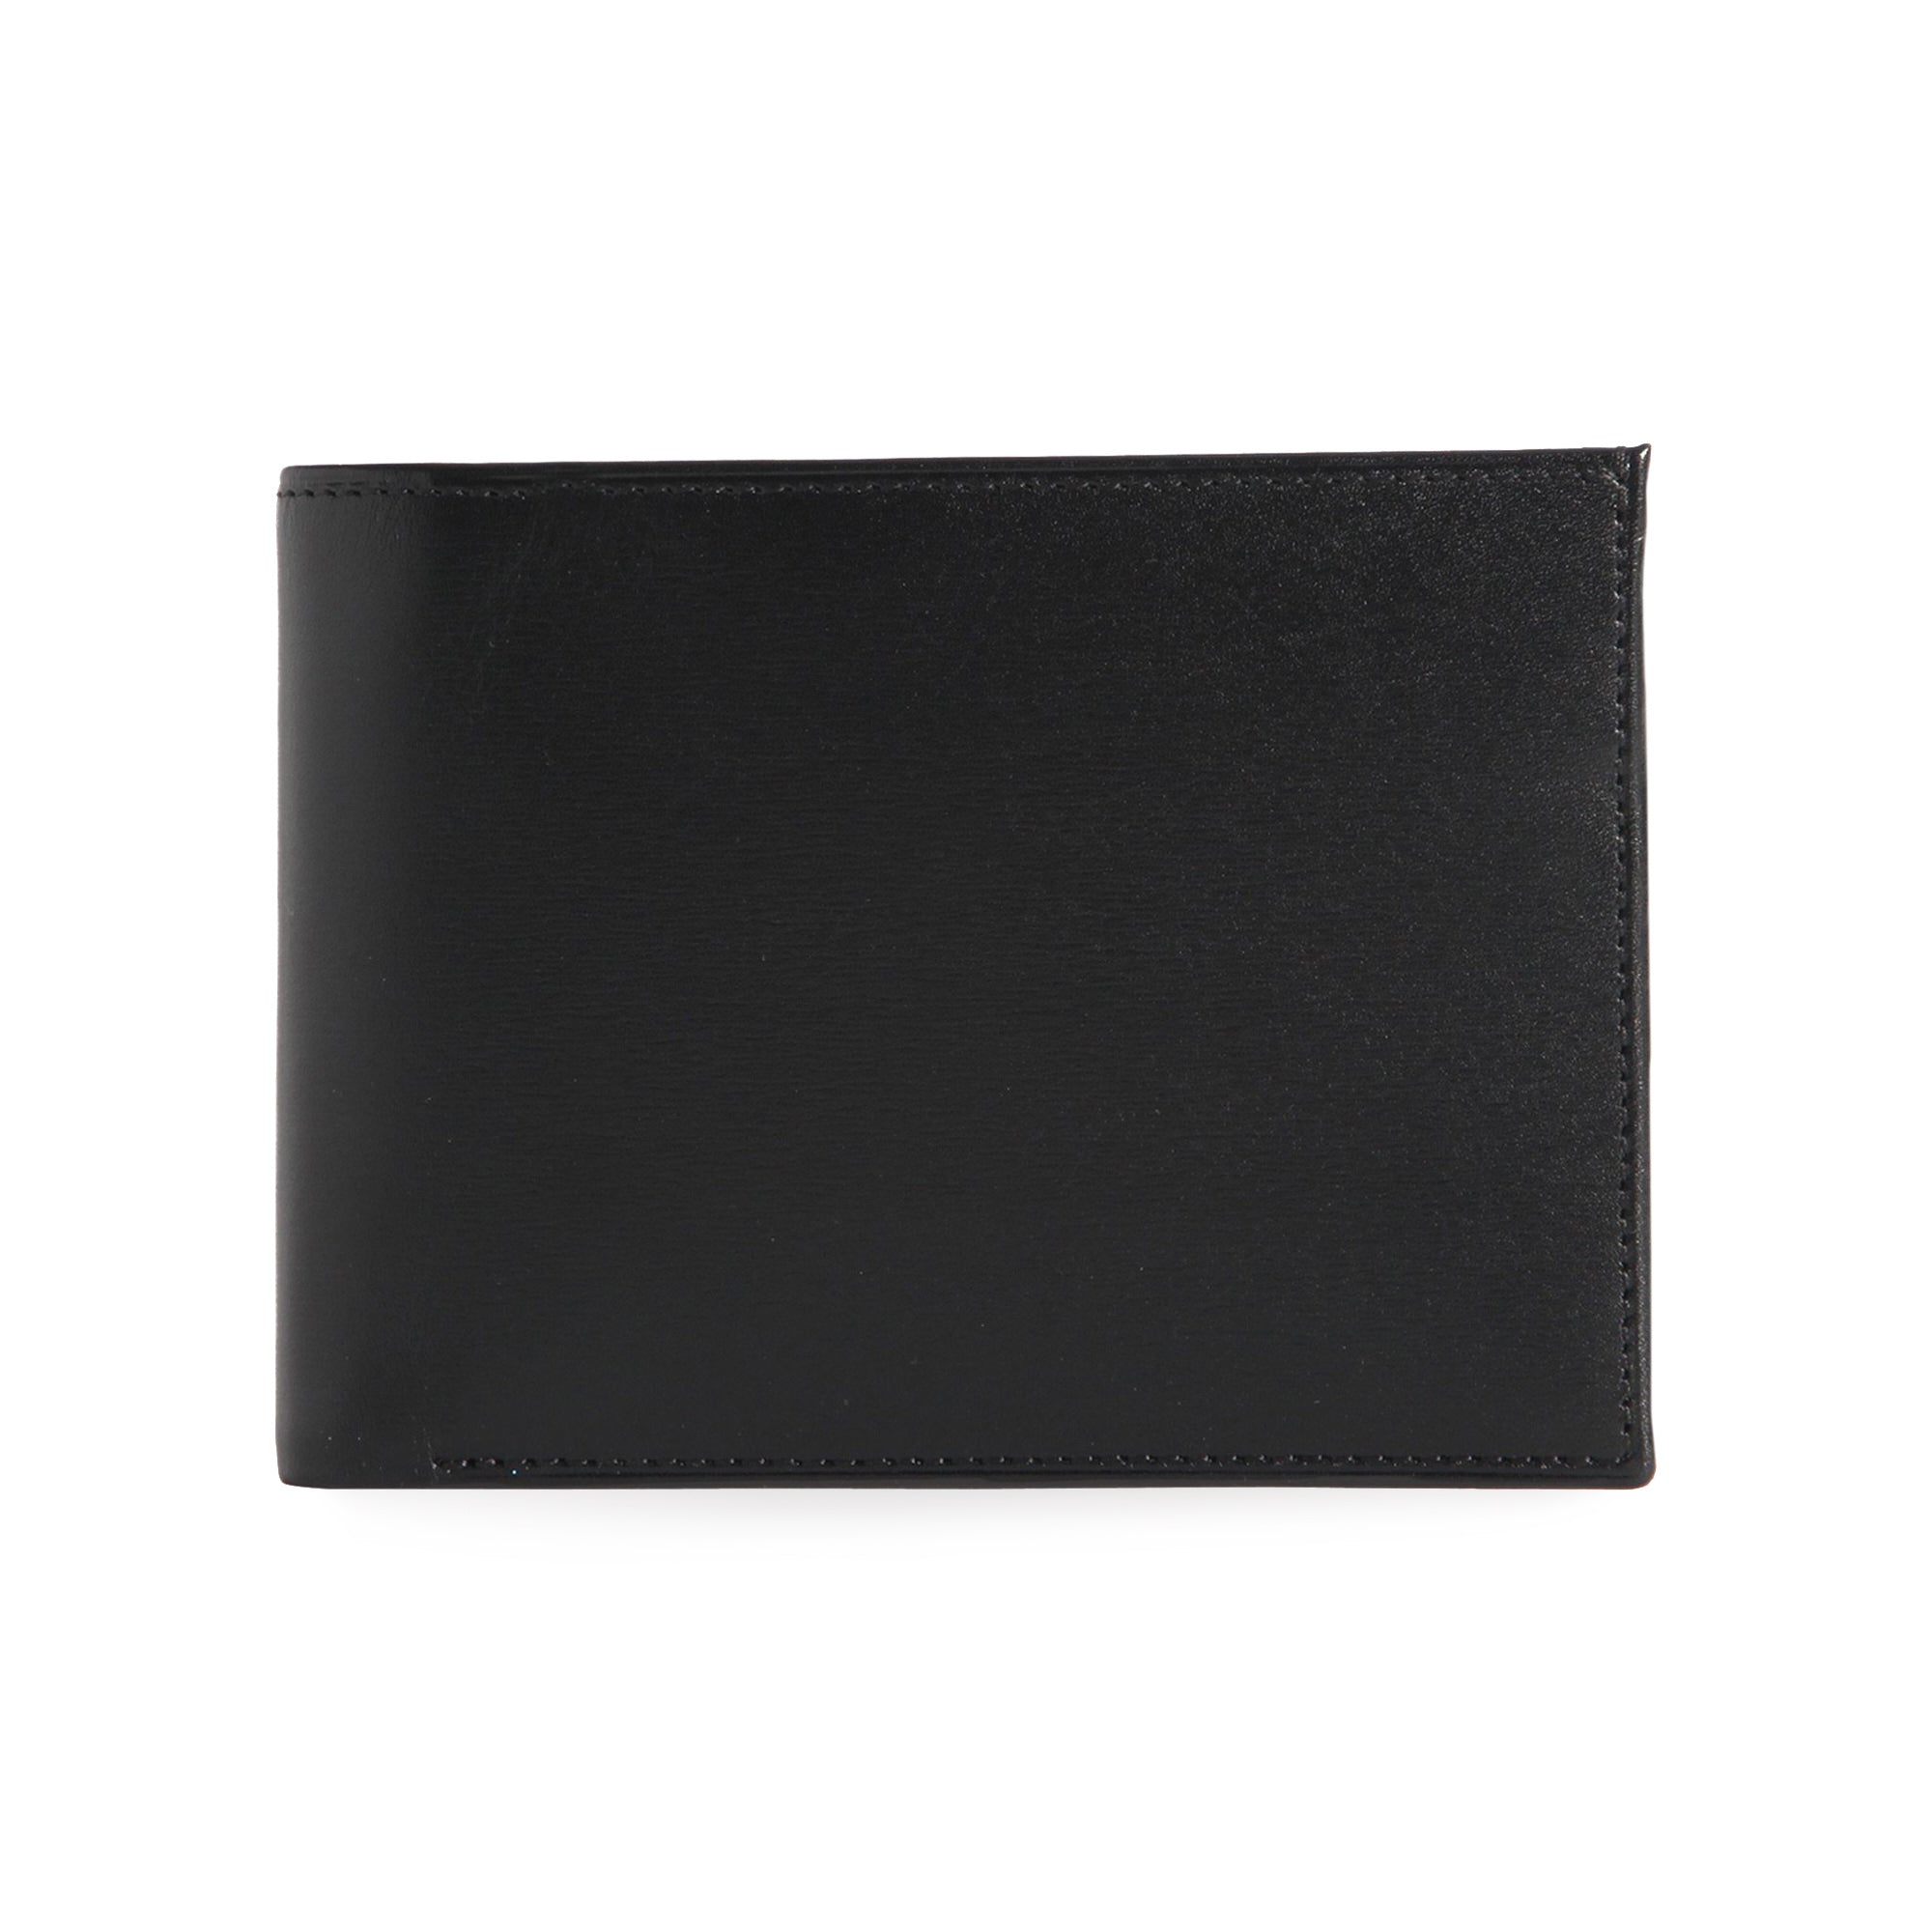 BLACK men's billfold wallet